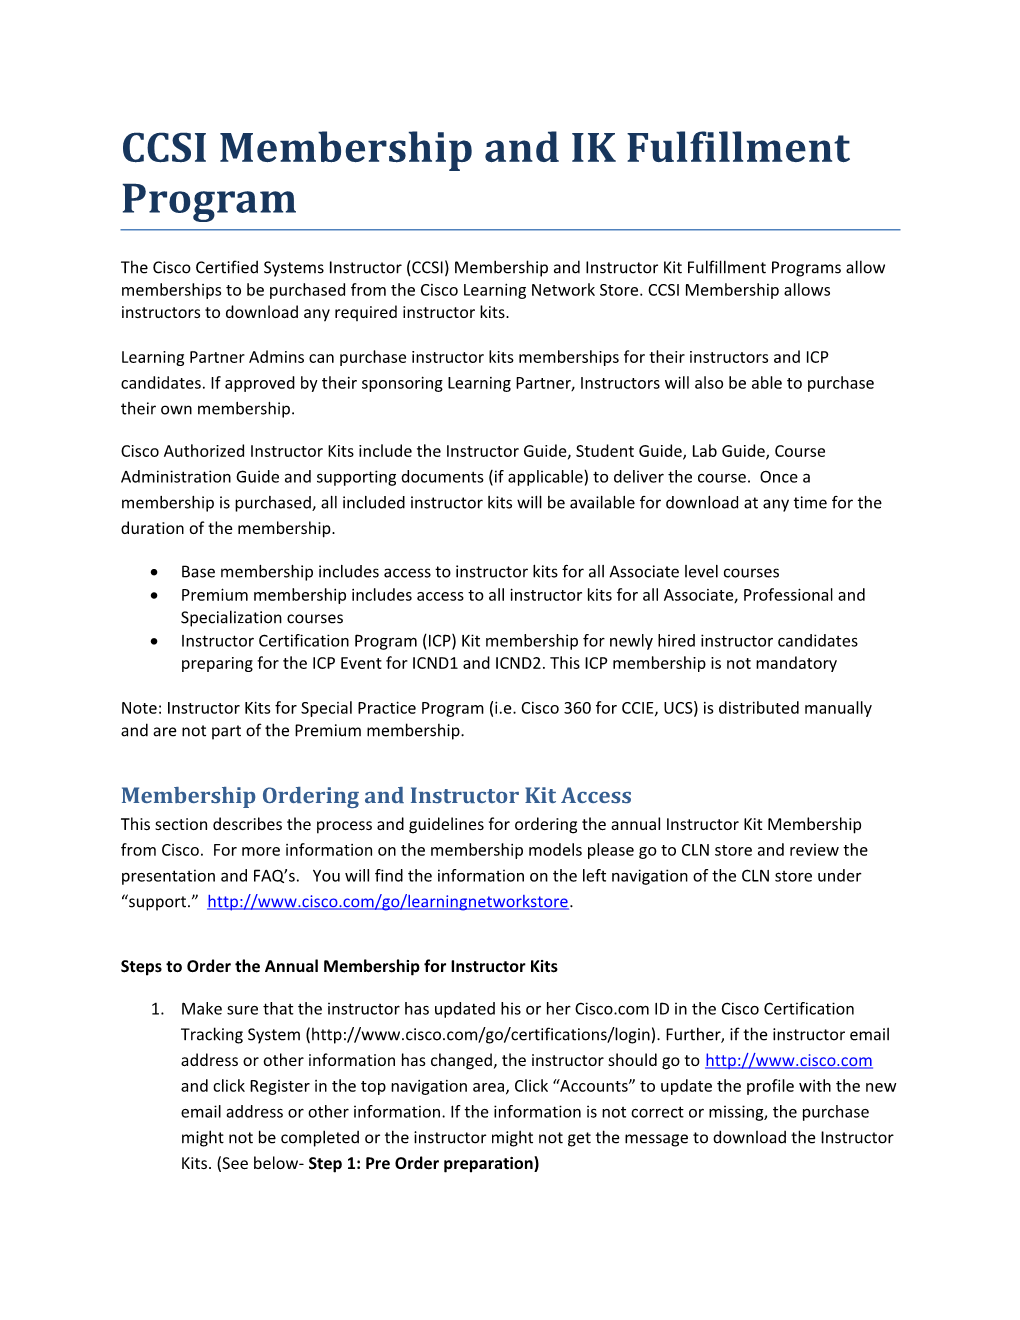 Ccsimembership and IK Fulfillment Program